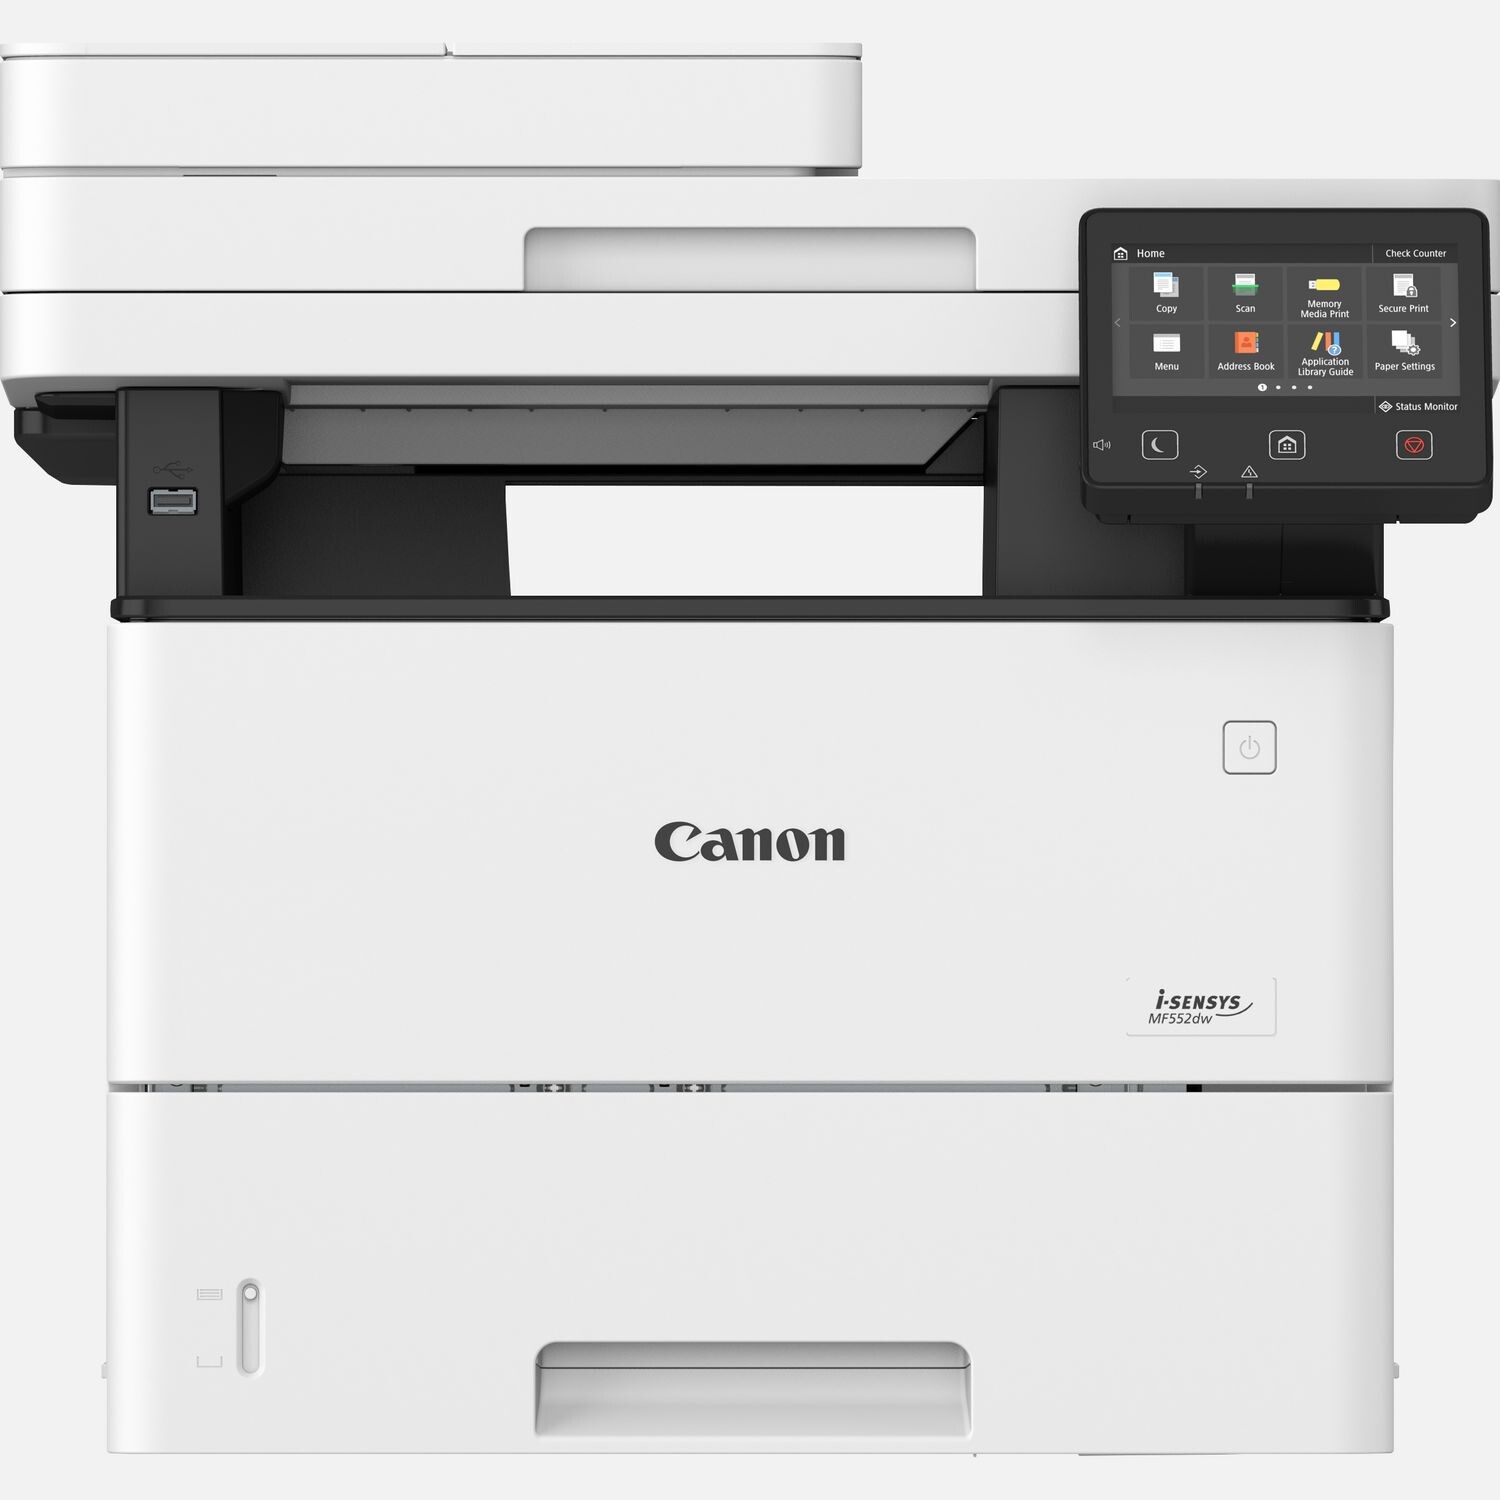 Canon-i-SENSYS-MF552dw-3-in-1-Schwarzweiss-Multifunktionsdrucker-weiss